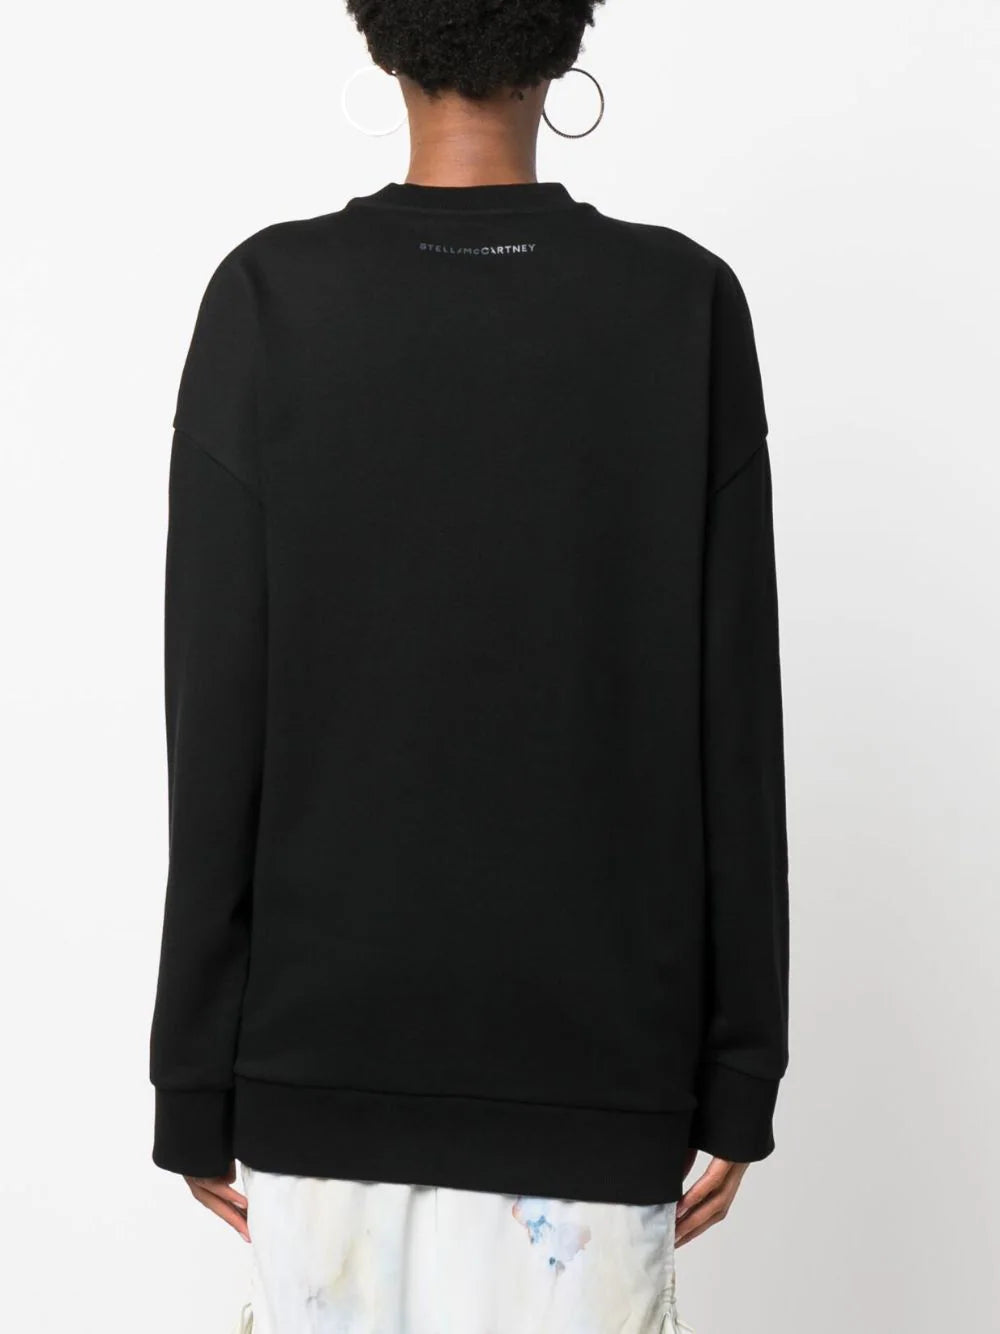 Hotfix pixel horse sweatshirt, black